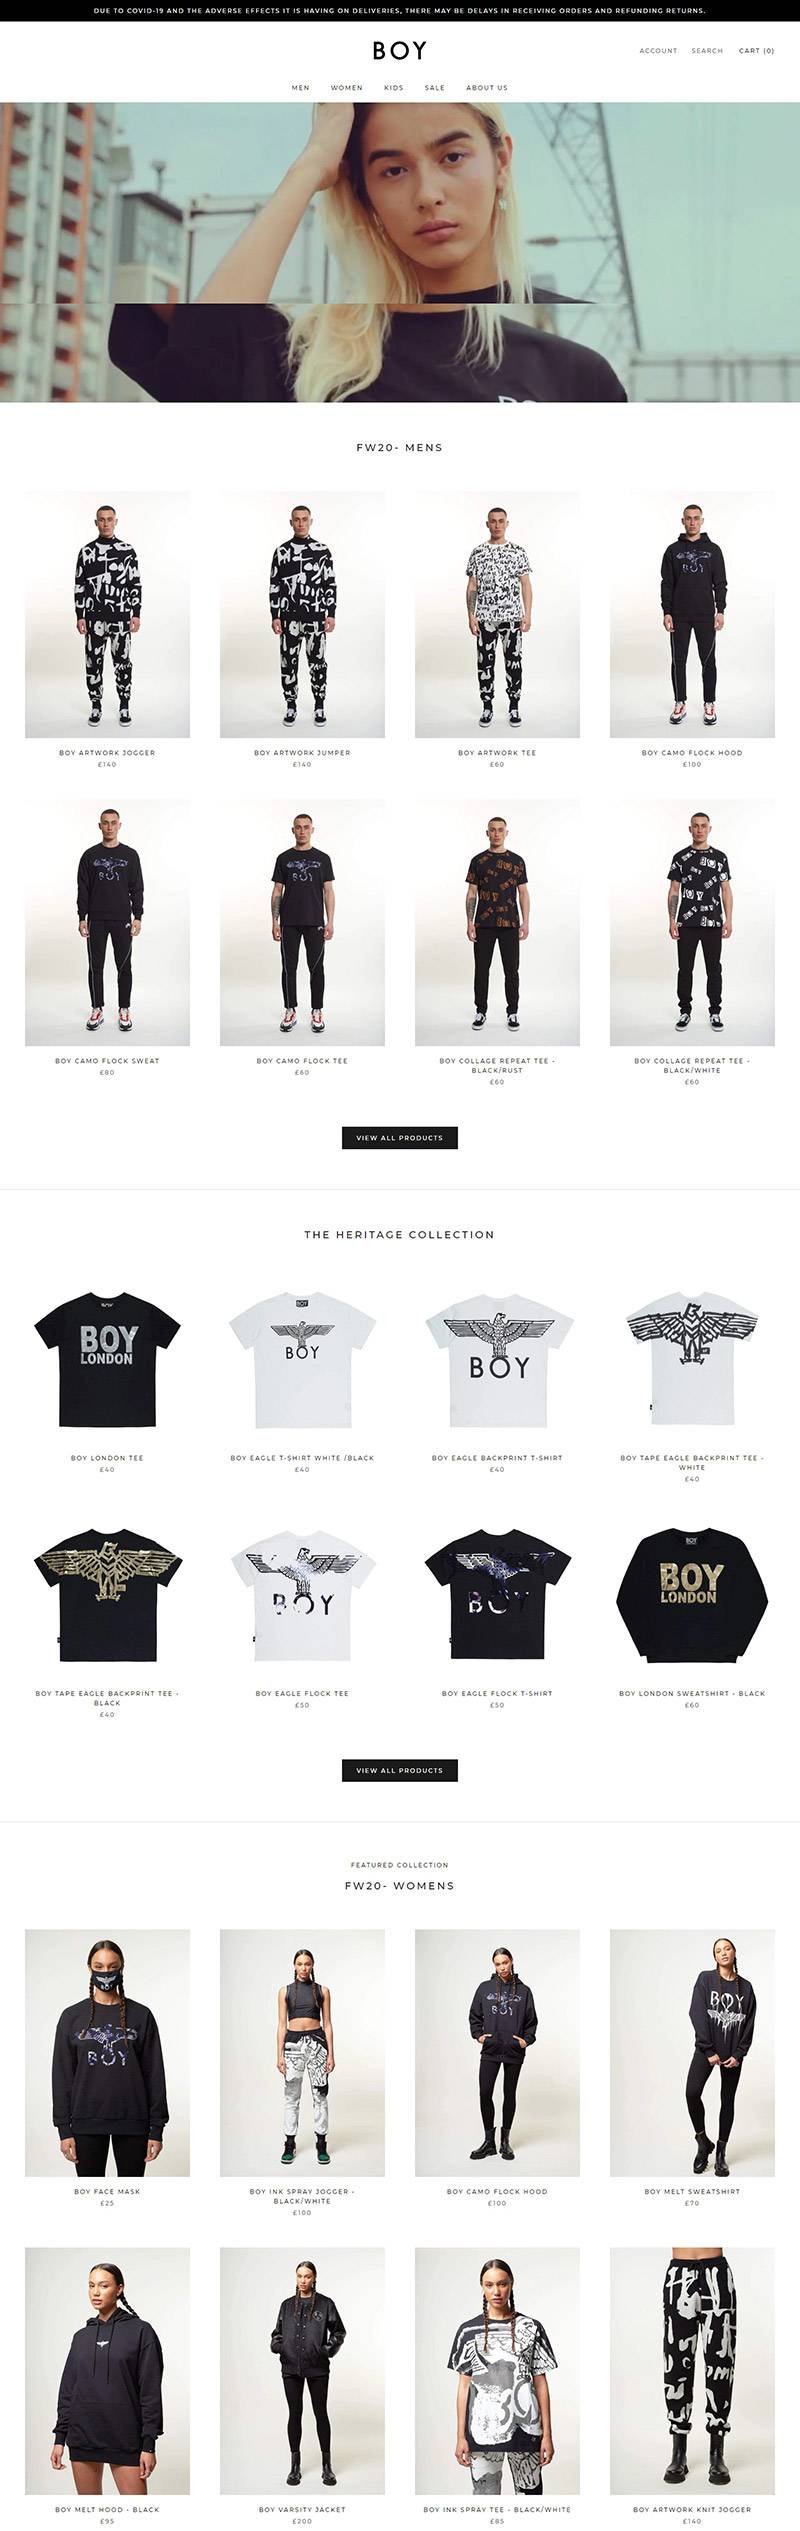 BOY London  英国街头潮流服饰品牌网站